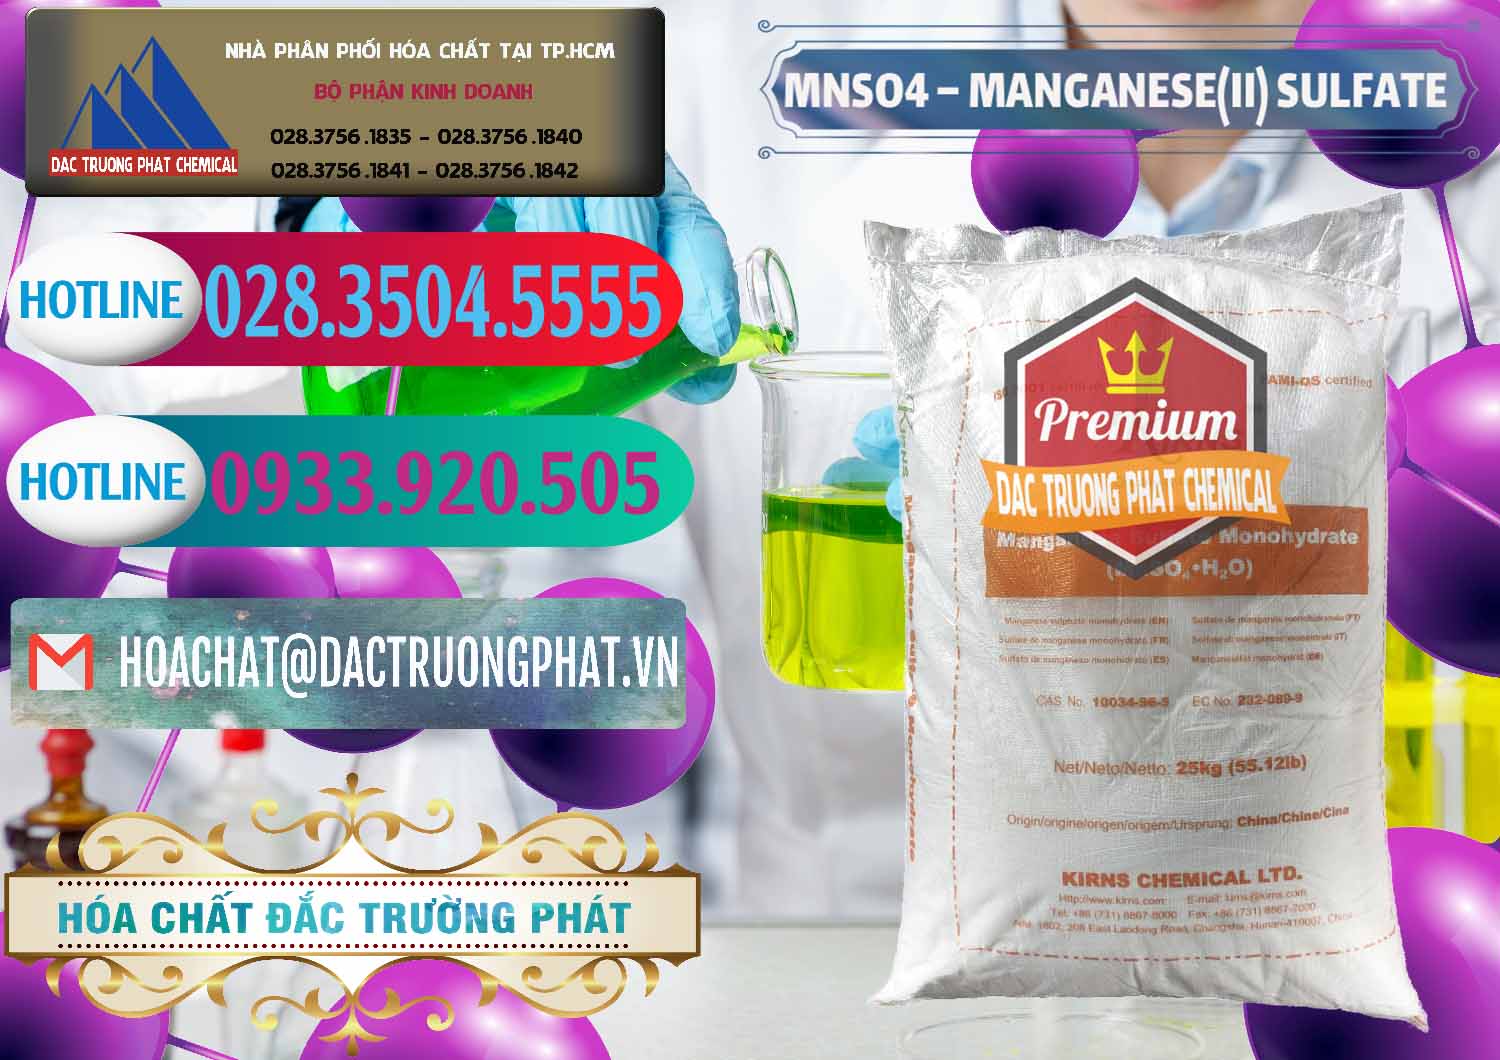 Cty chuyên bán ( cung ứng ) MNSO4 – Manganese (II) Sulfate Kirns Trung Quốc China - 0095 - Nhập khẩu ( phân phối ) hóa chất tại TP.HCM - truongphat.vn